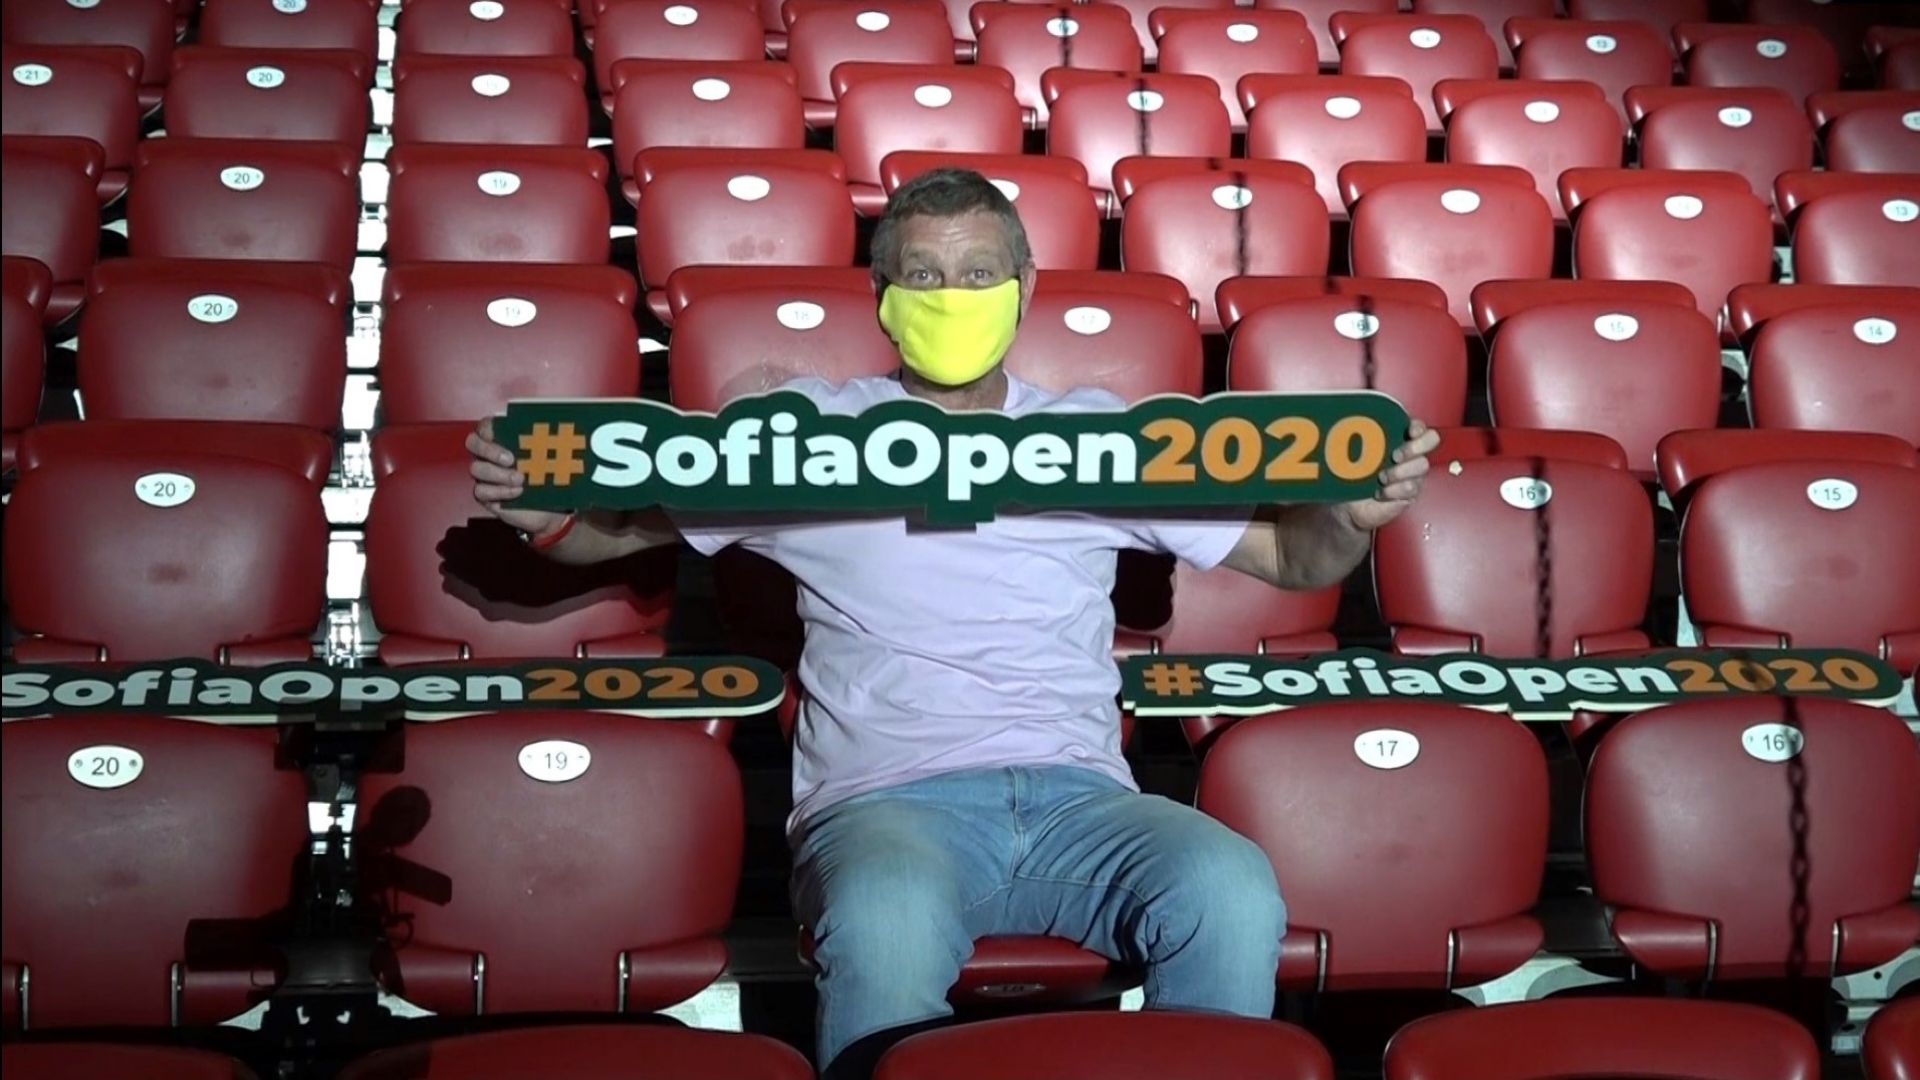 Какво трябва да знаят и спазват феновете на тенис турнира Sofia Open 2020? (Видео)